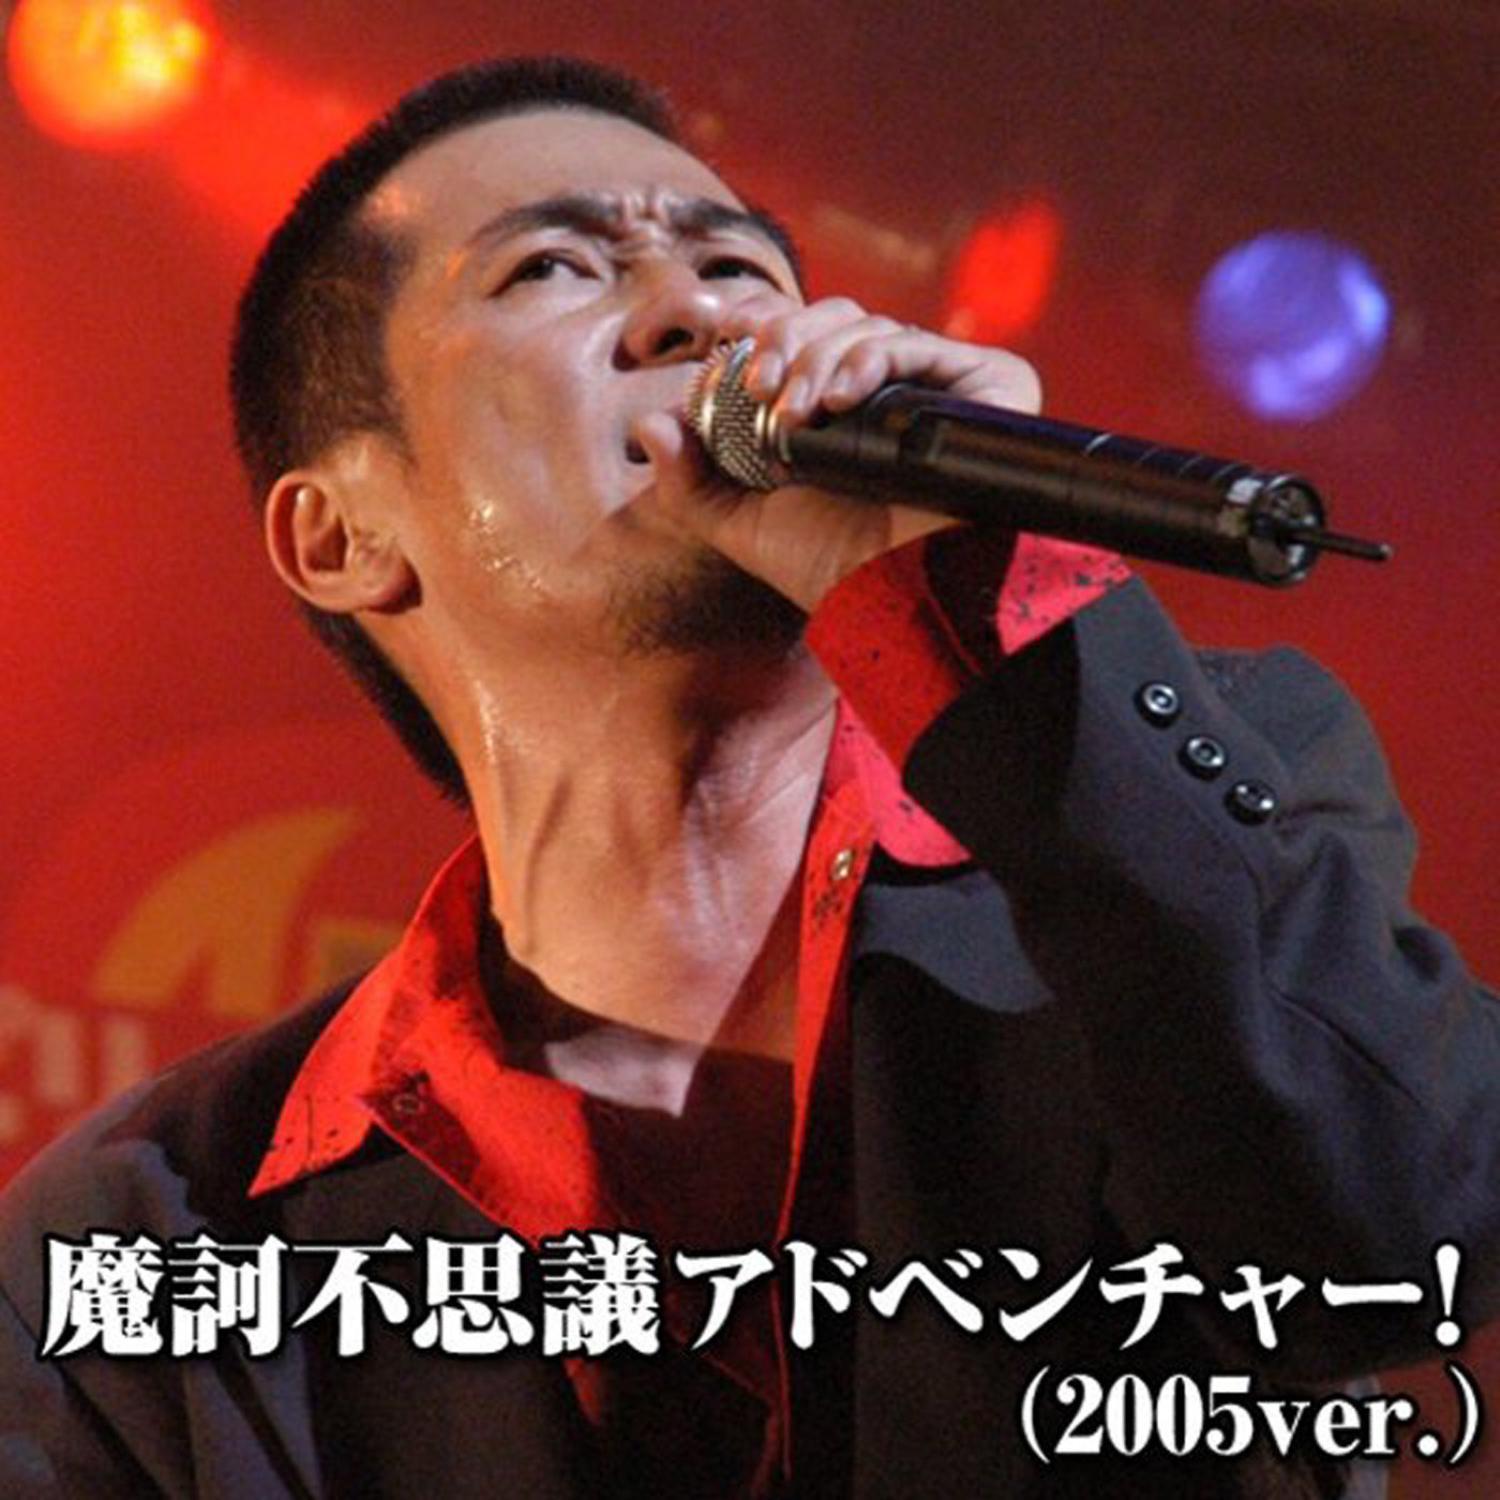 魔訶不思議アドベンチャー! (2005ver.)专辑